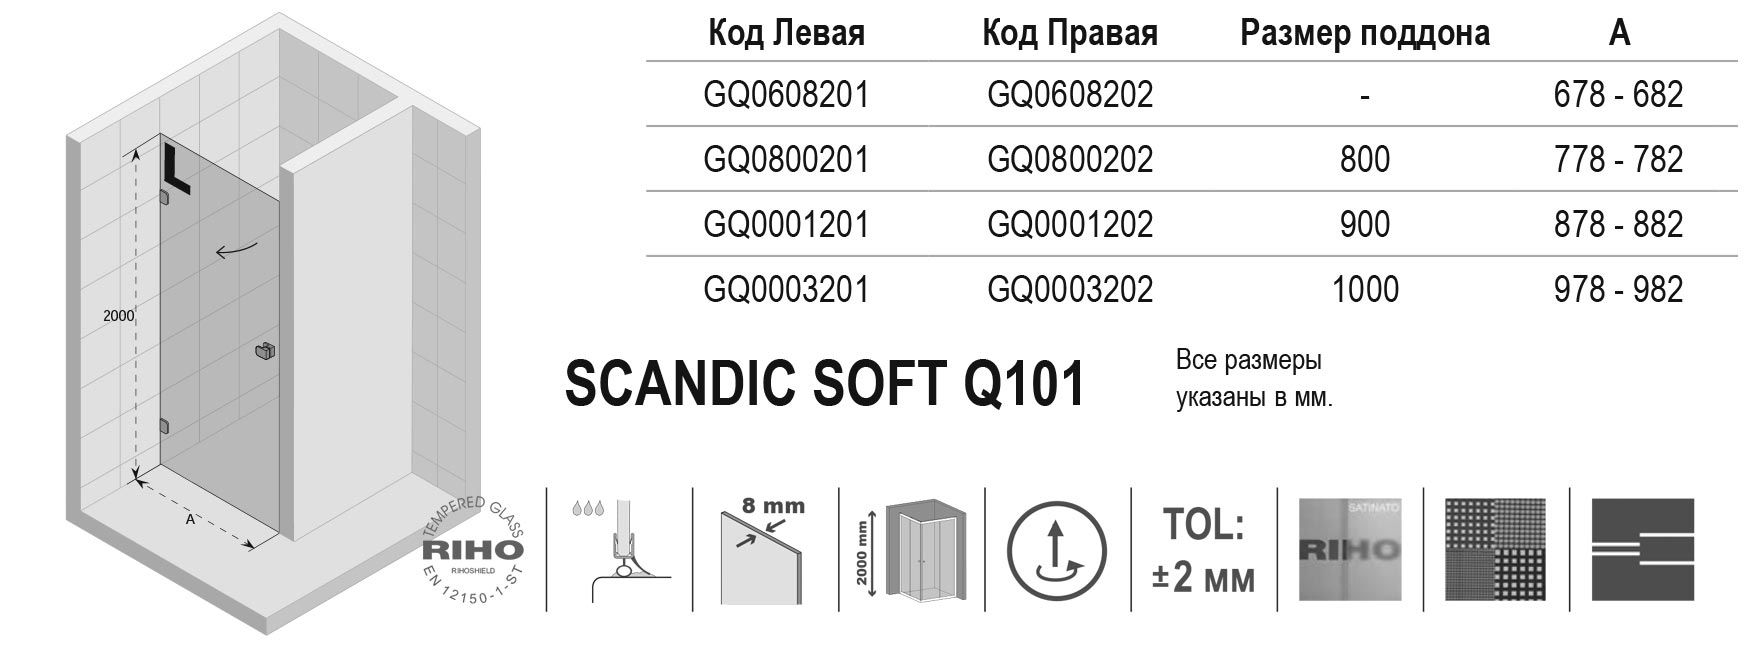 Чертёж Riho Scandic Soft Q101 GQ0001202